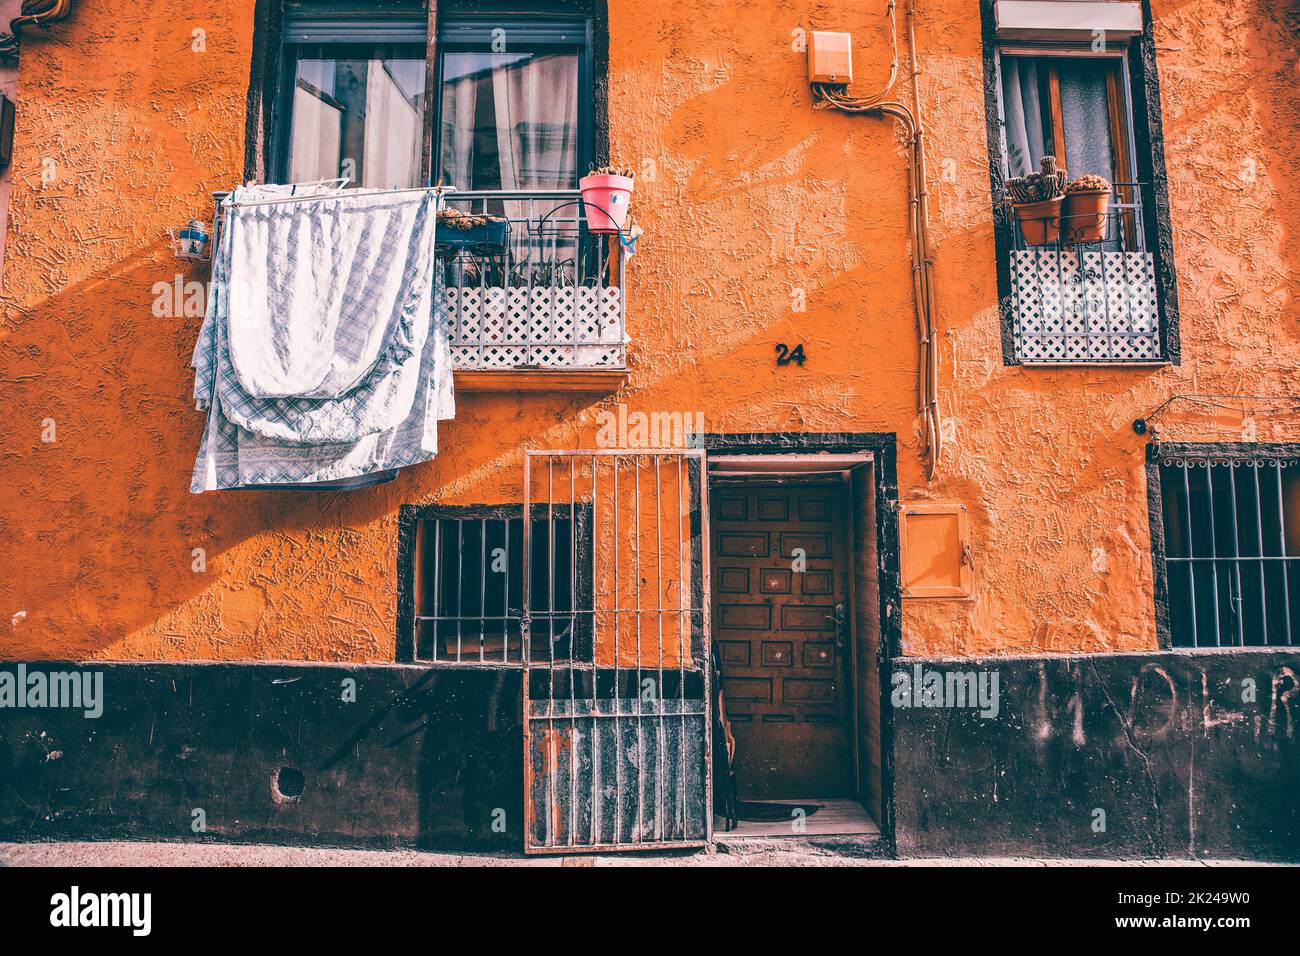 Détail des anciennes maisons et bâtiments traditionnels du centre historique de la ville de Huesca, Espagne Banque D'Images